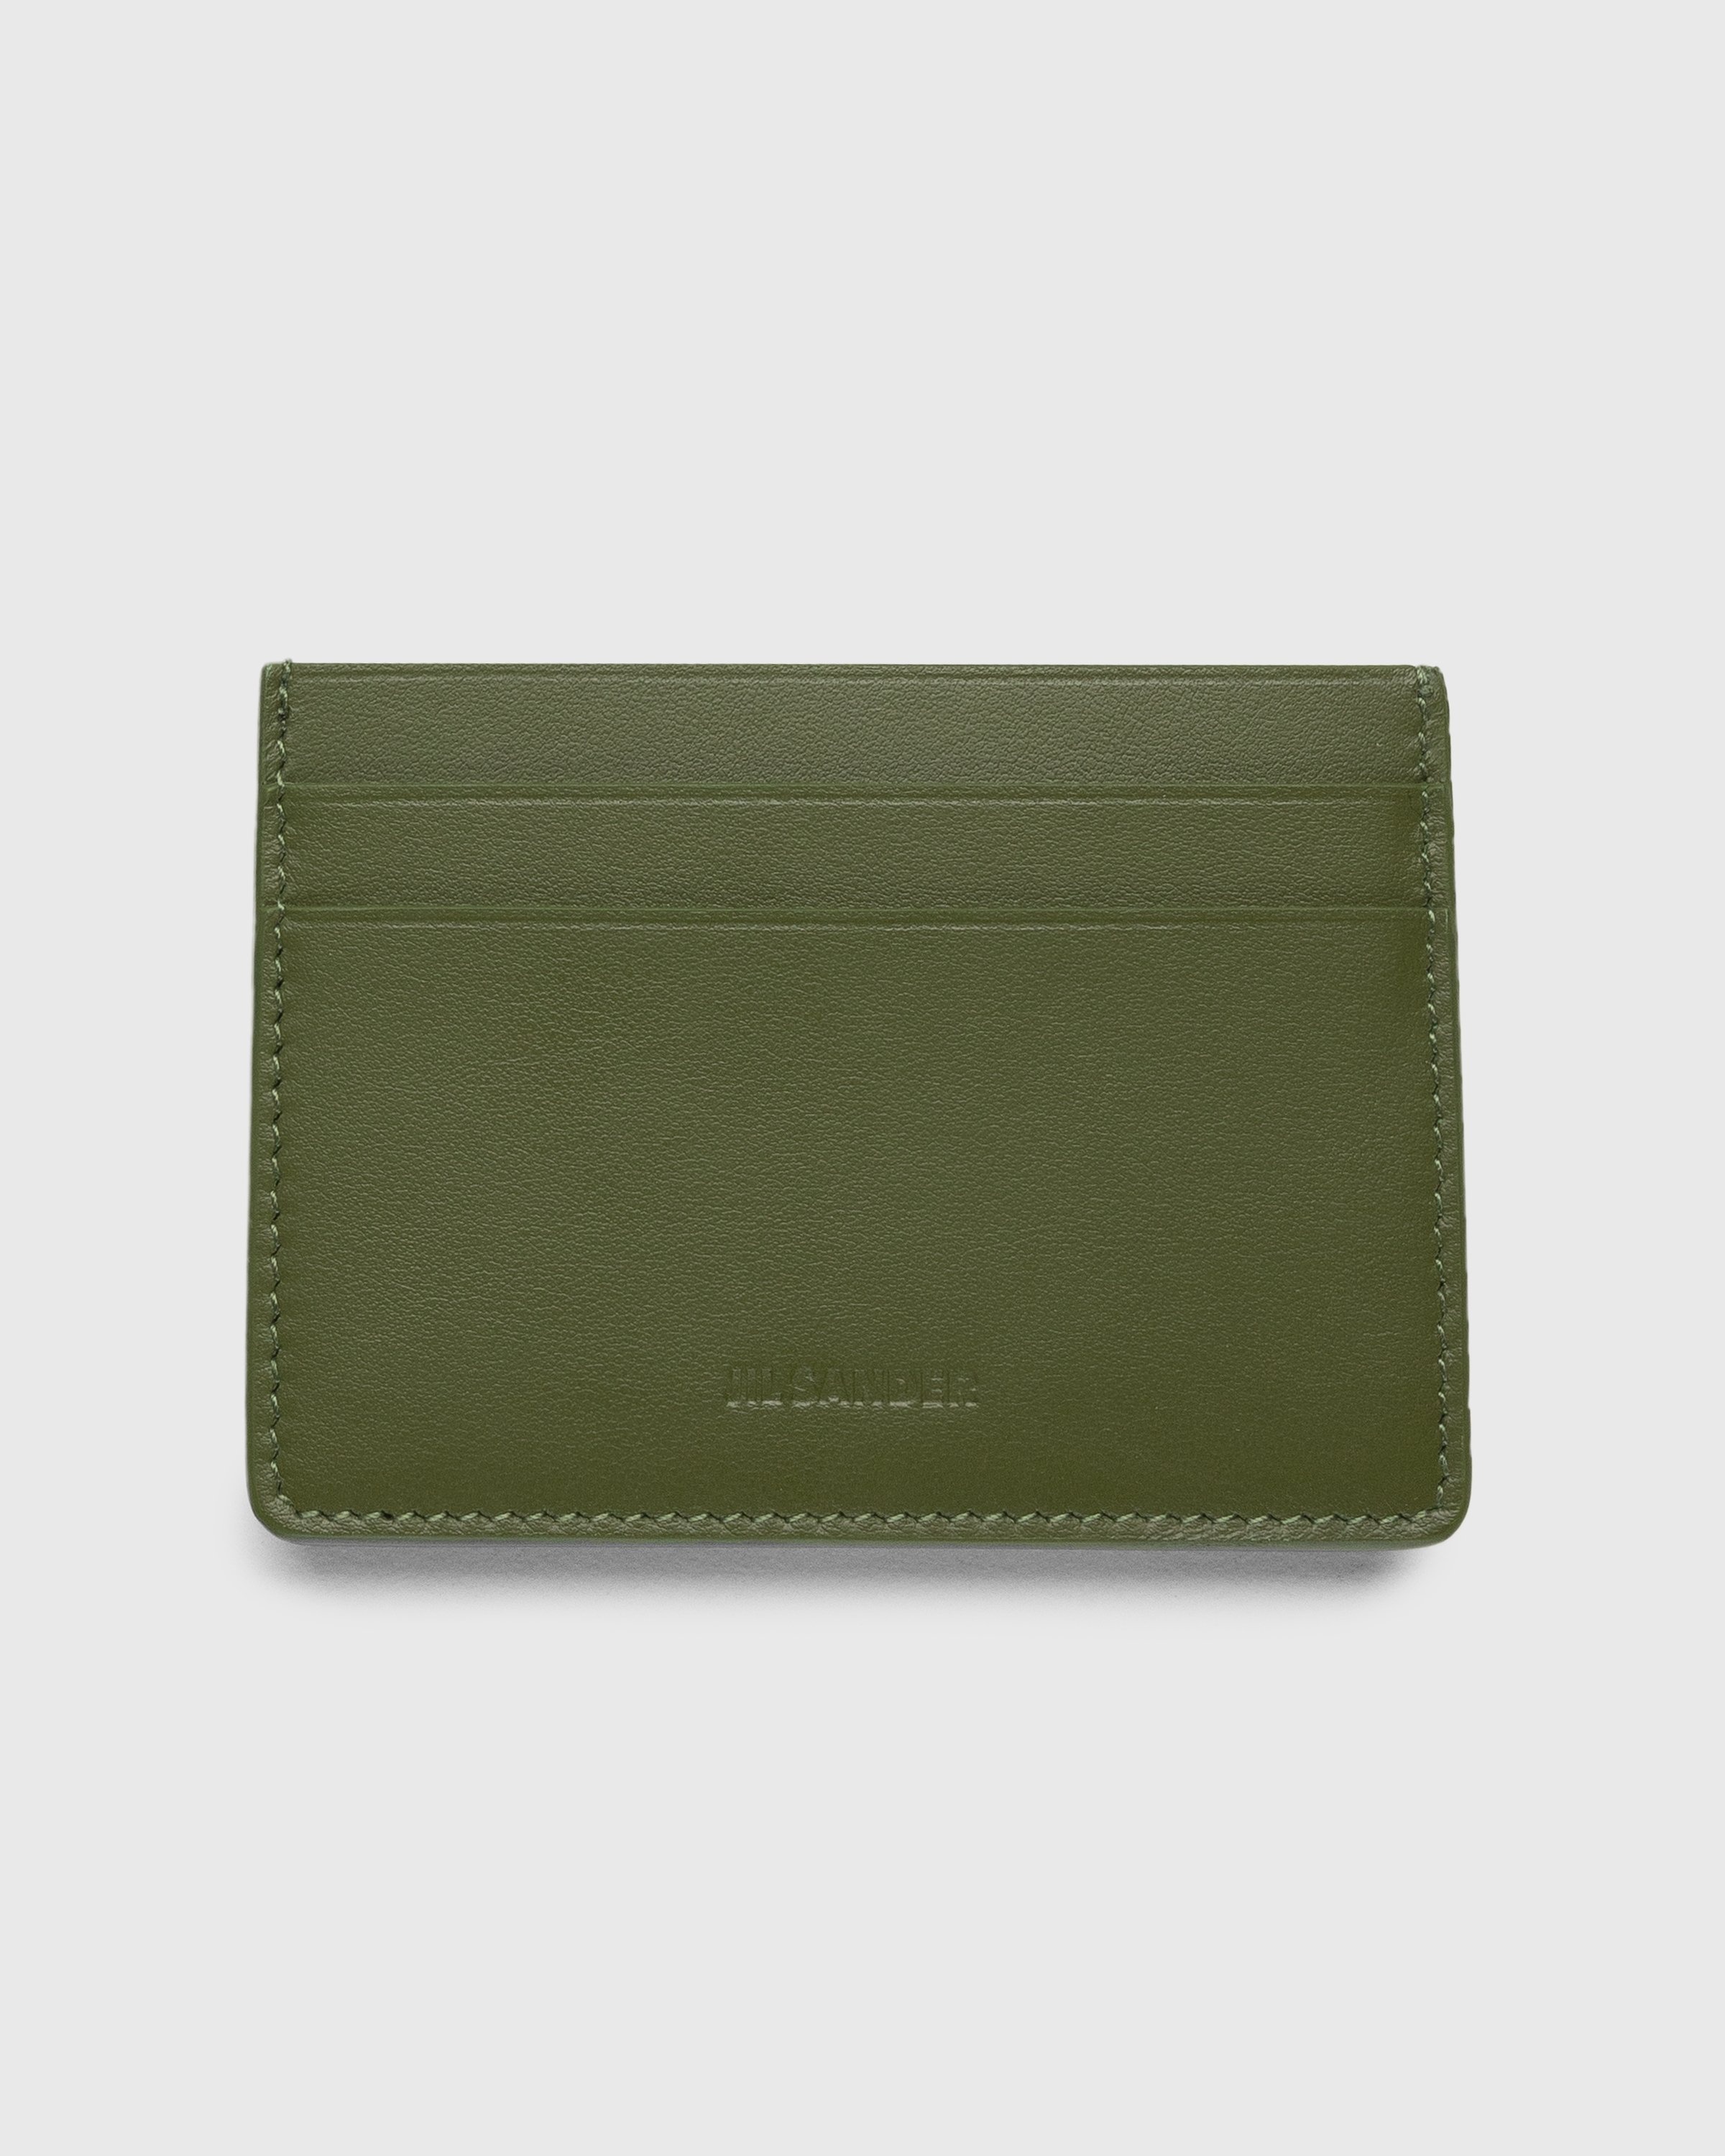 Jil Sander – Leather Card Holder Green - Wallets - Grey - Image 1